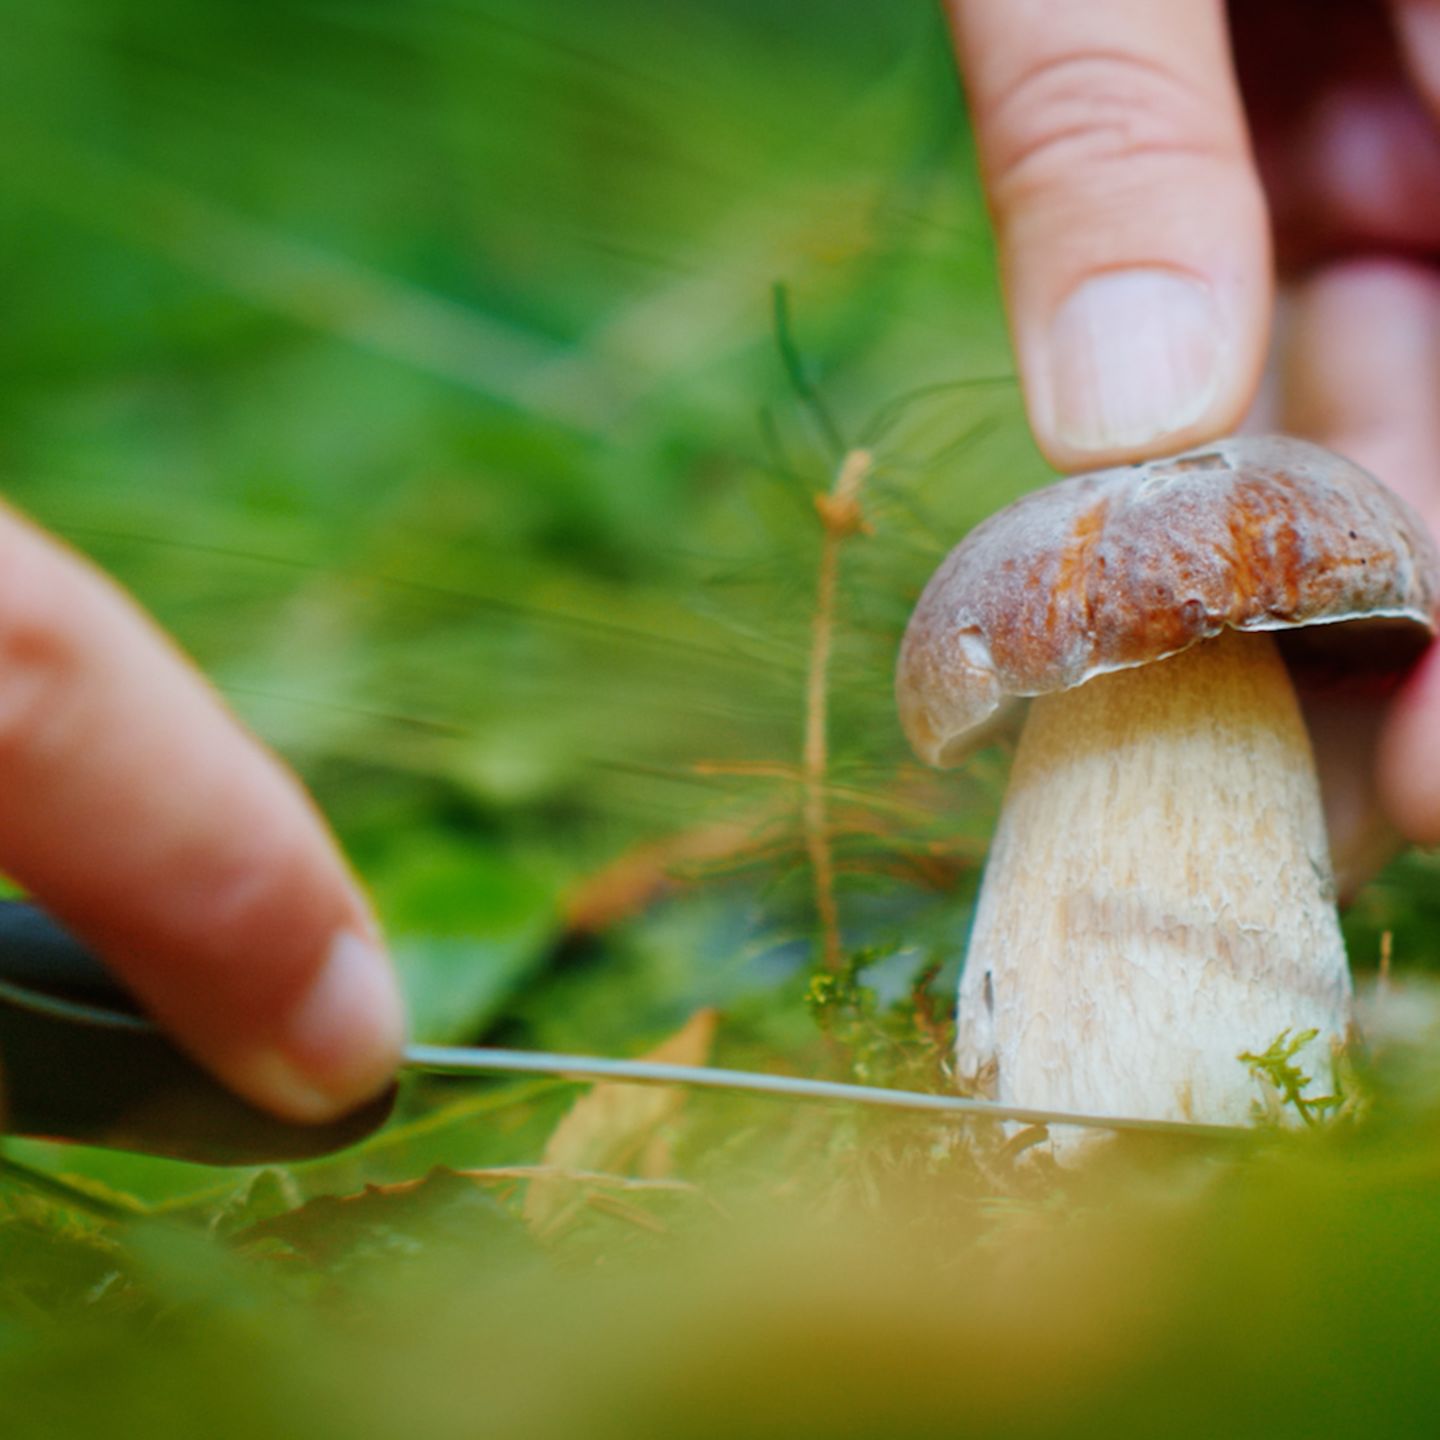 Pilze sammeln: Diese sechs Dinge sollten Sie bei der Suche